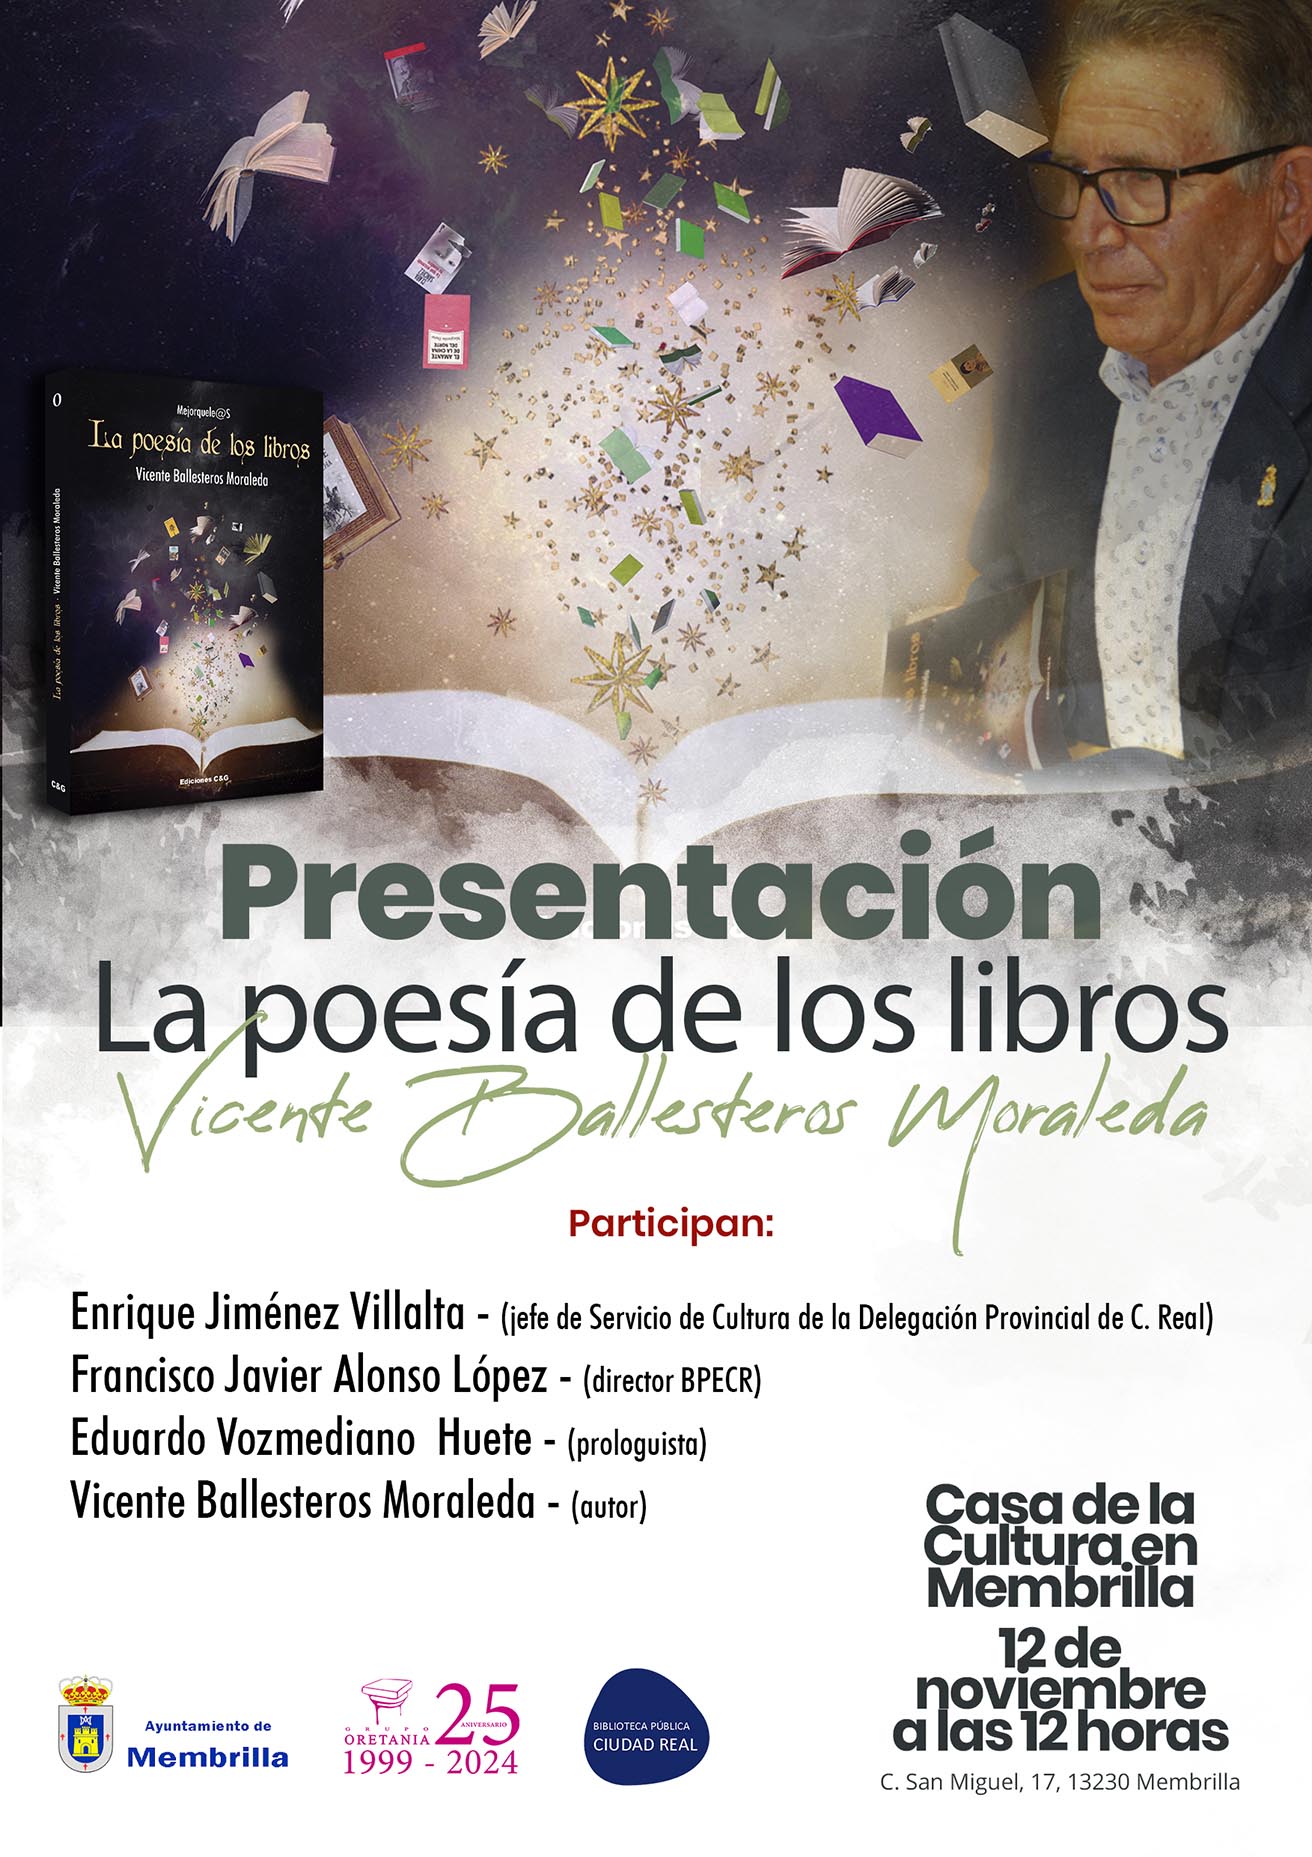 El poeta membrillato, Vicente Ballesteros, presentará su poemario “La poesía de los libros” en su pueblo natal